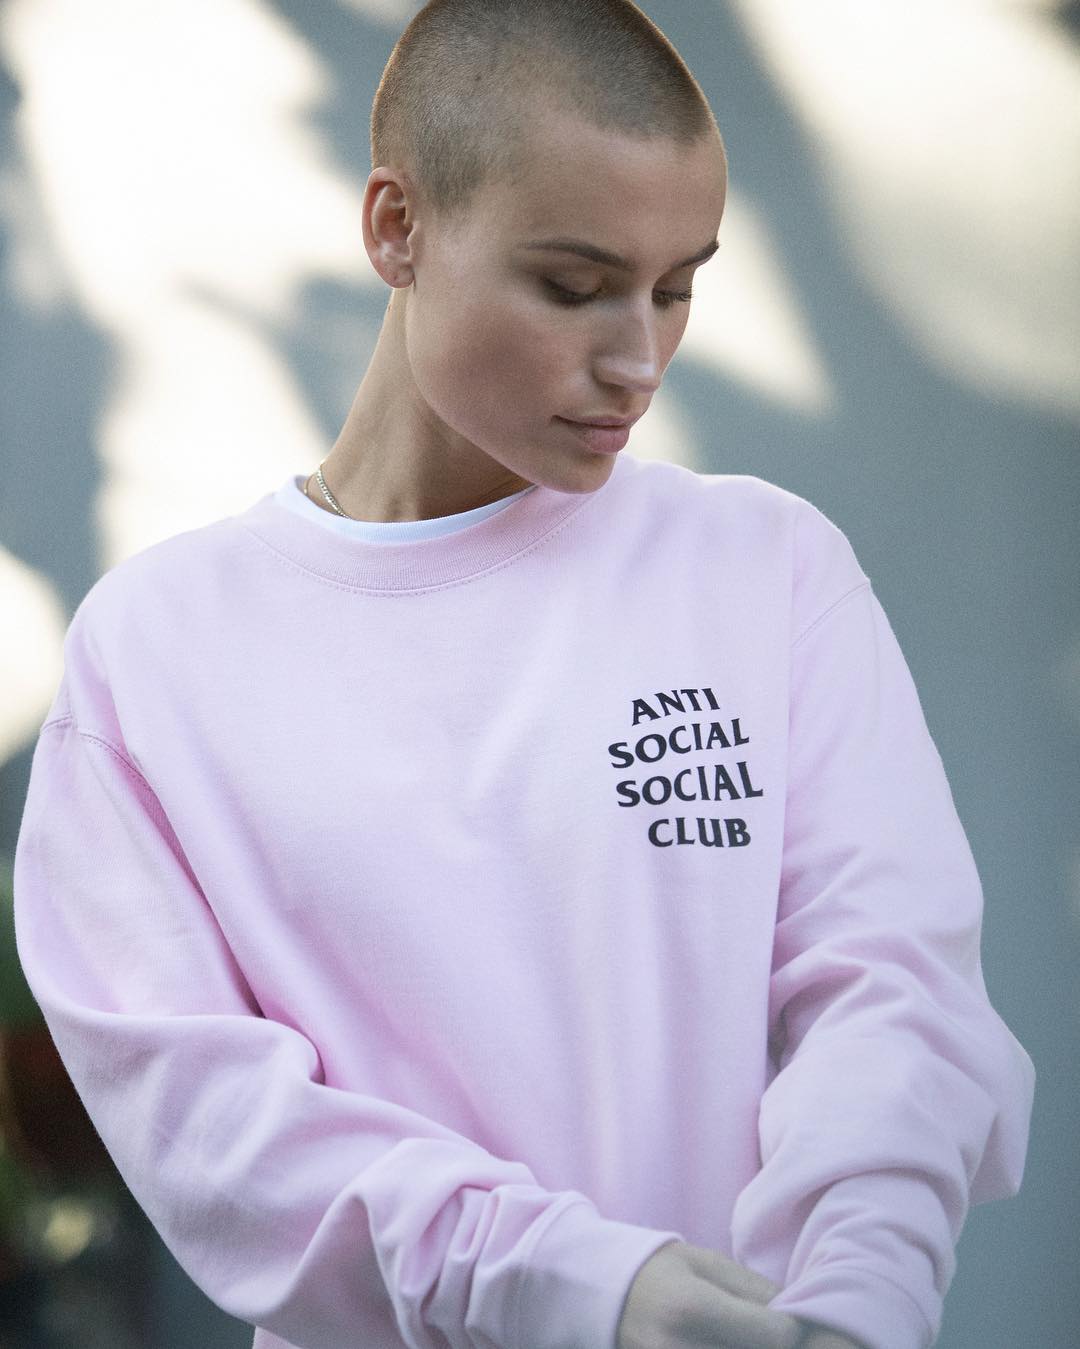 11月4日 0:00発売開始 anti social social club 2018FW 第2弾 #ASSC 